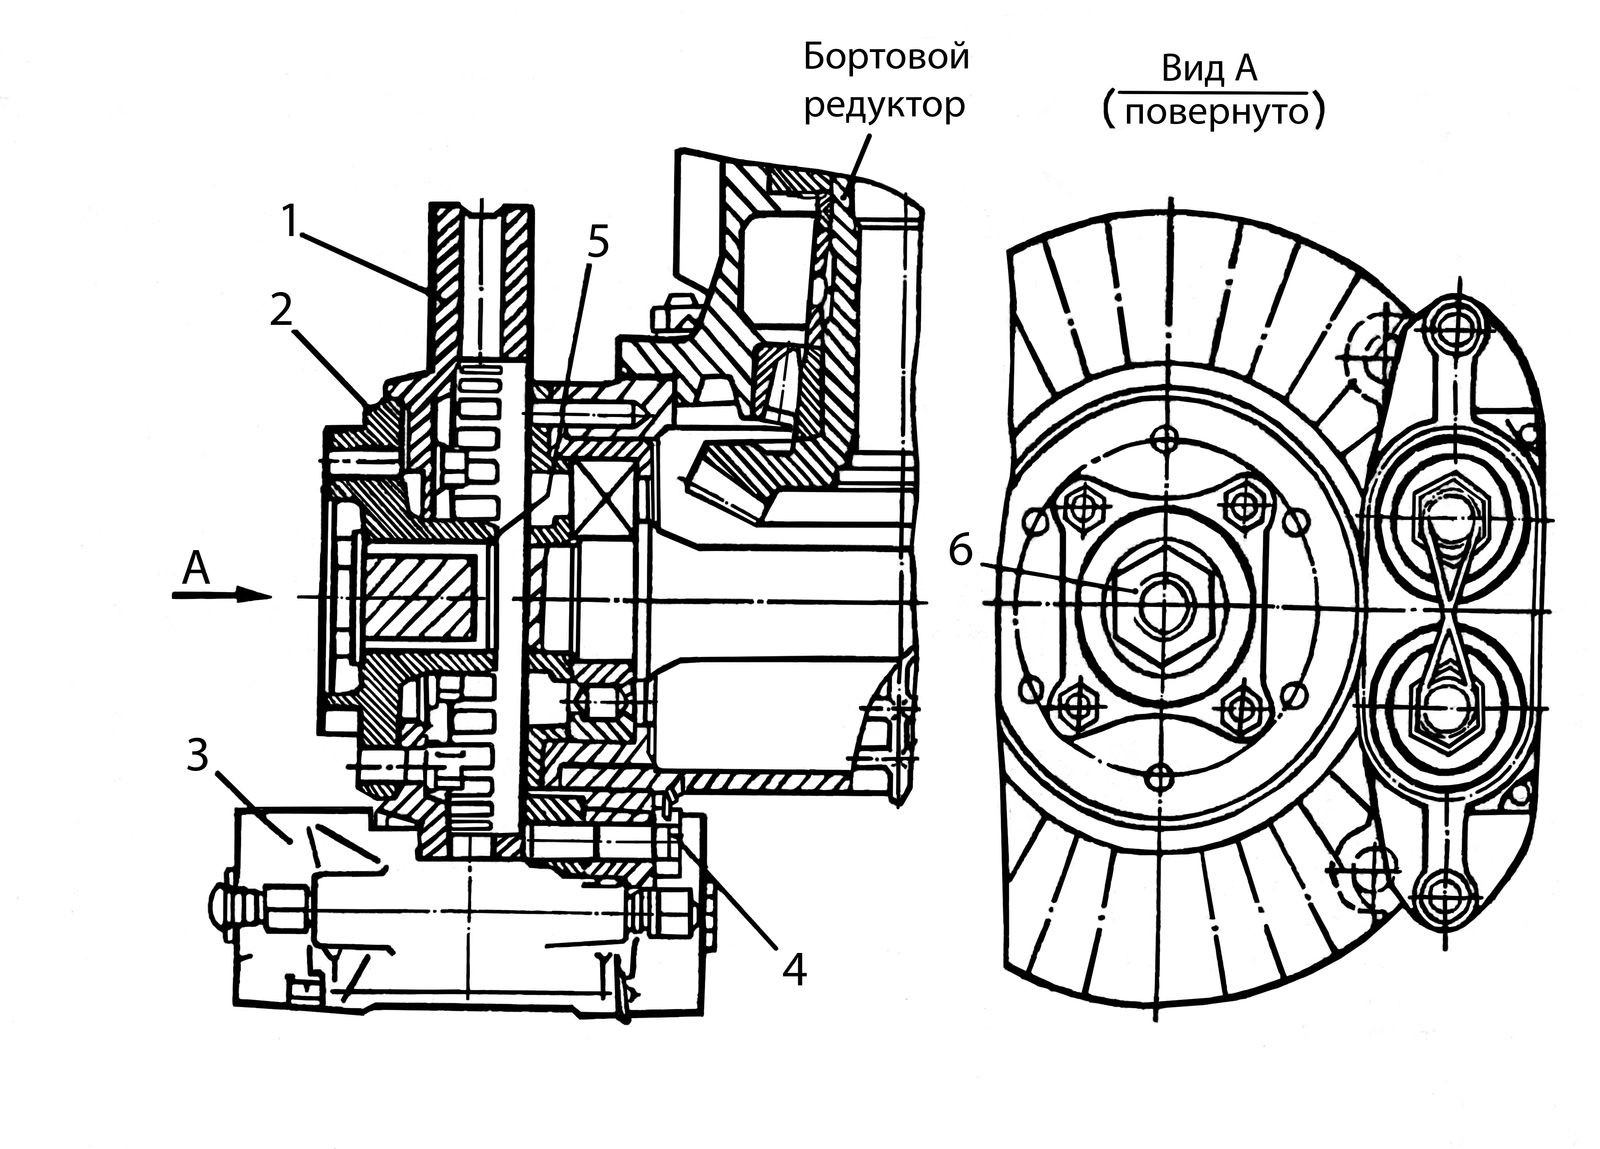 Как на вездеходе ЗИЛ-5901 в конце 60-х впервые в мире появились дисковые тормоза на трансмиссии